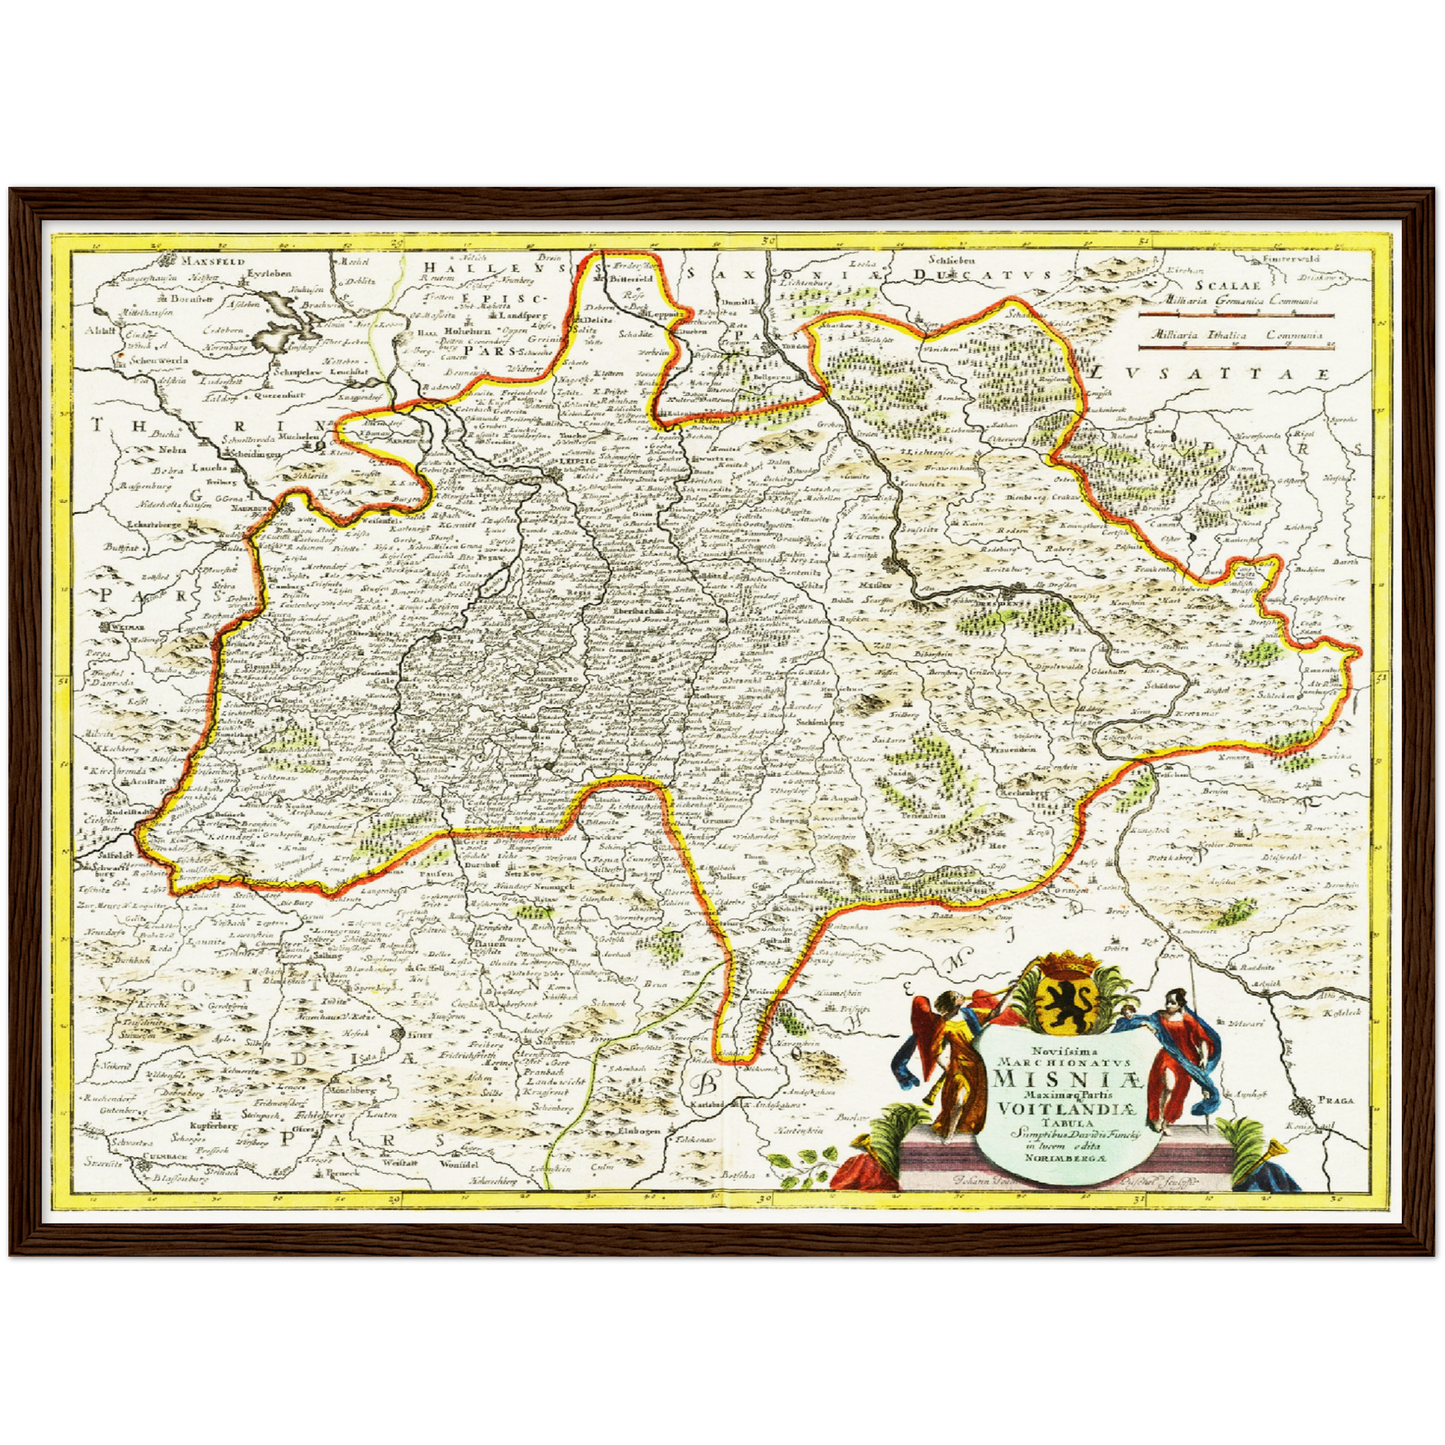 Historische Landkarte Meißen um 1700